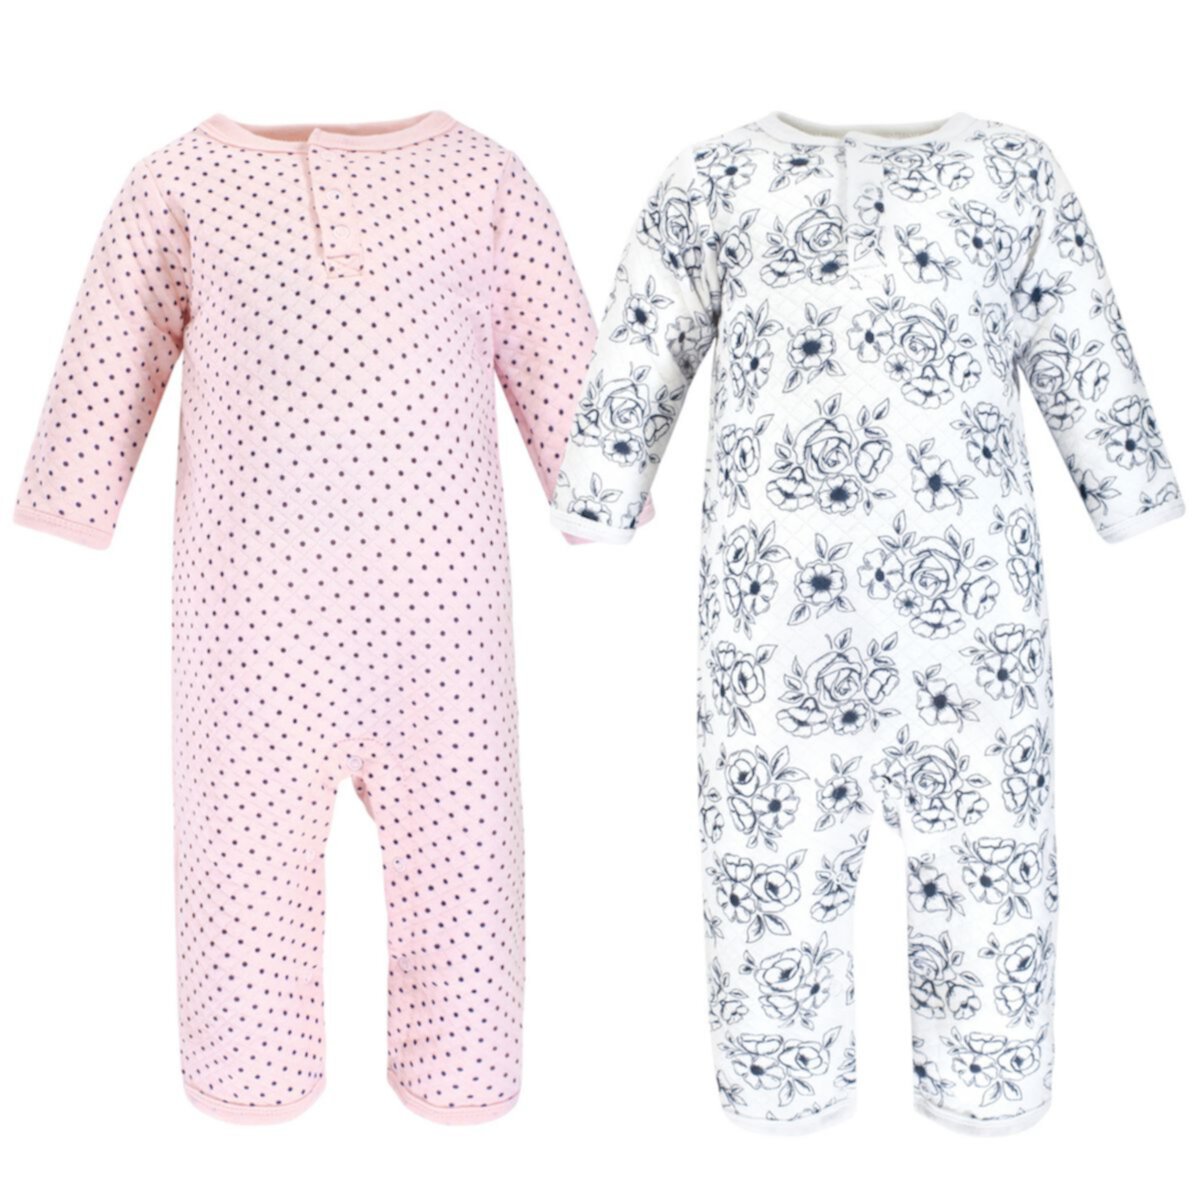 Детские комплекты одежды Hudson Baby для девочек Premium Quilted Coveralls, Blue Toile Hudson Baby